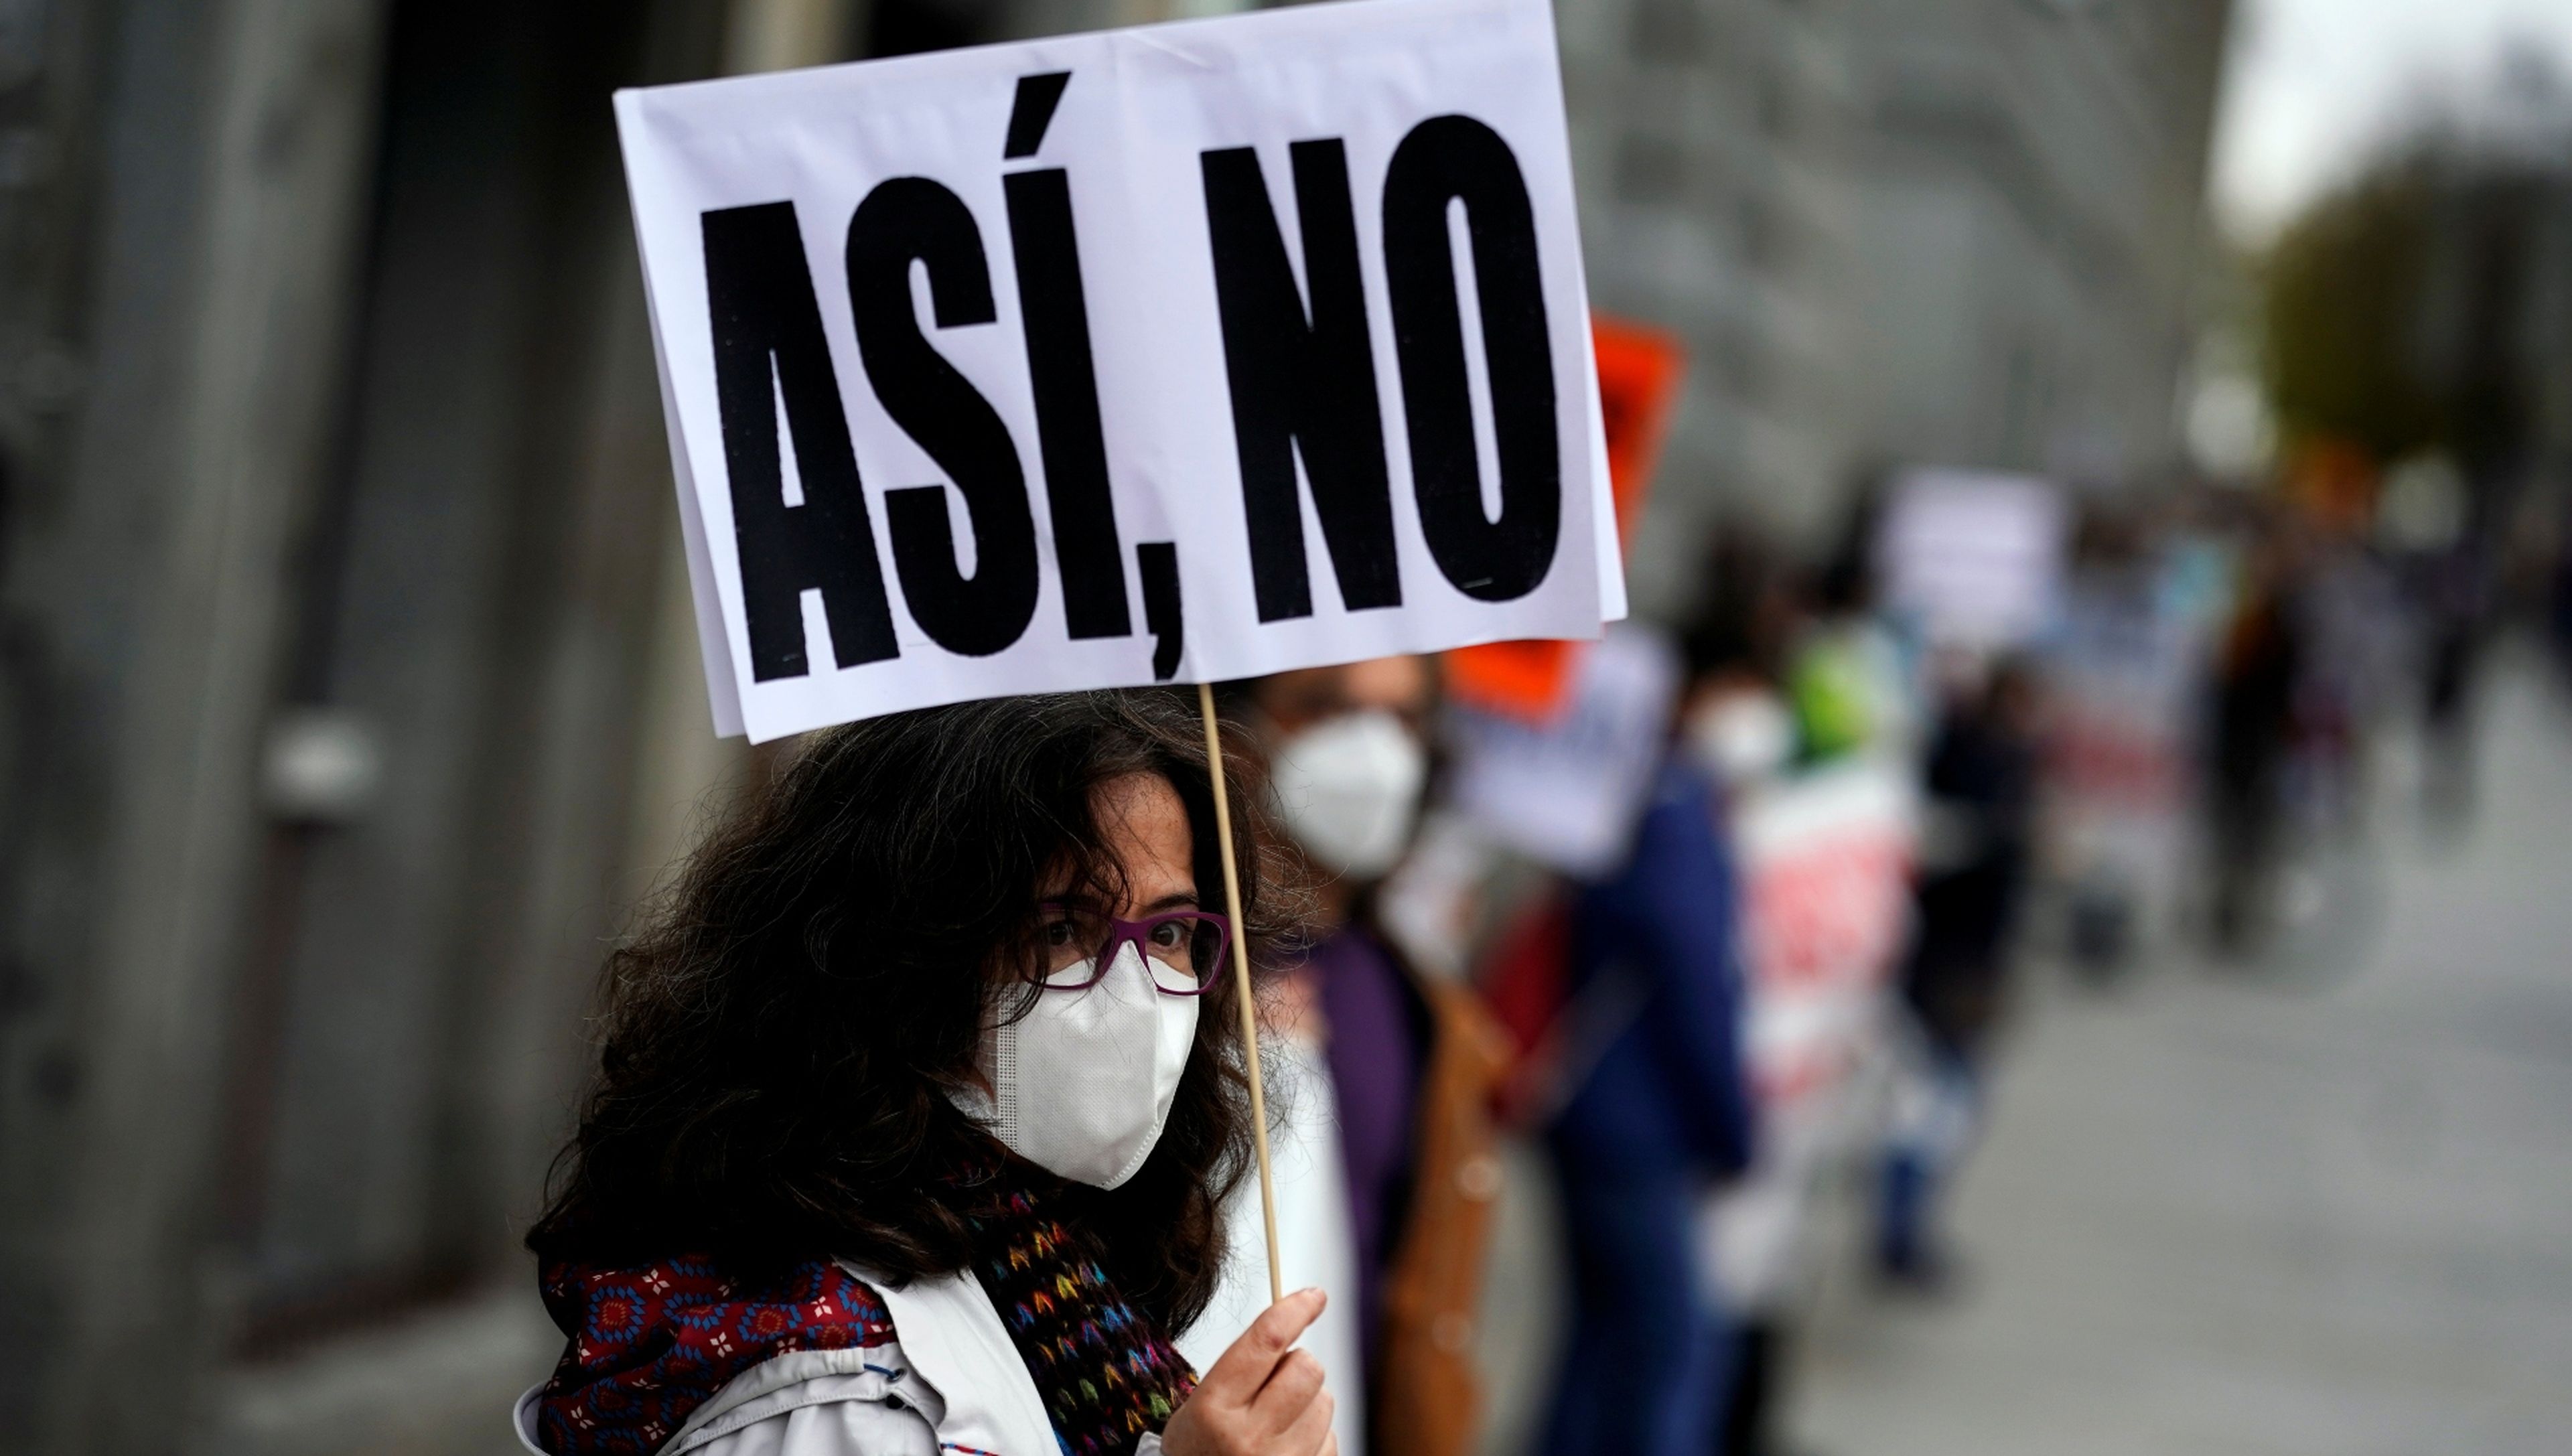 Una mujer protesta contra los recortes en Sanidad durante la pandemia de coronavirus